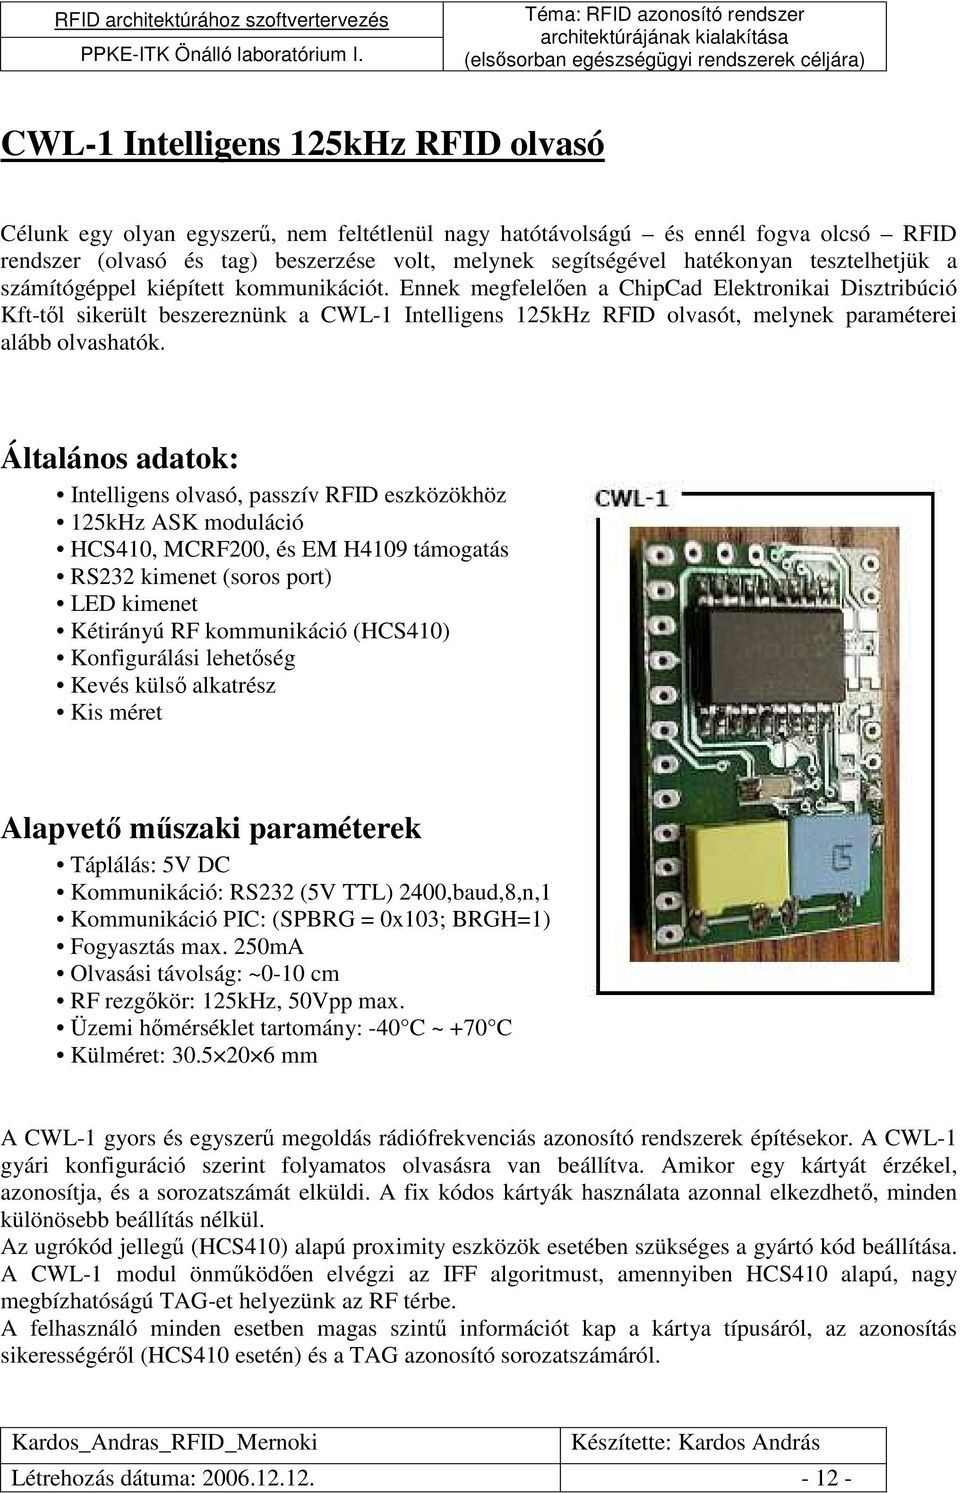 Ennek megfelelıen a ChipCad Elektronikai Disztribúció Kft-tıl sikerült beszereznünk a CWL-1 Intelligens 125kHz RFID olvasót, melynek paraméterei alább olvashatók.